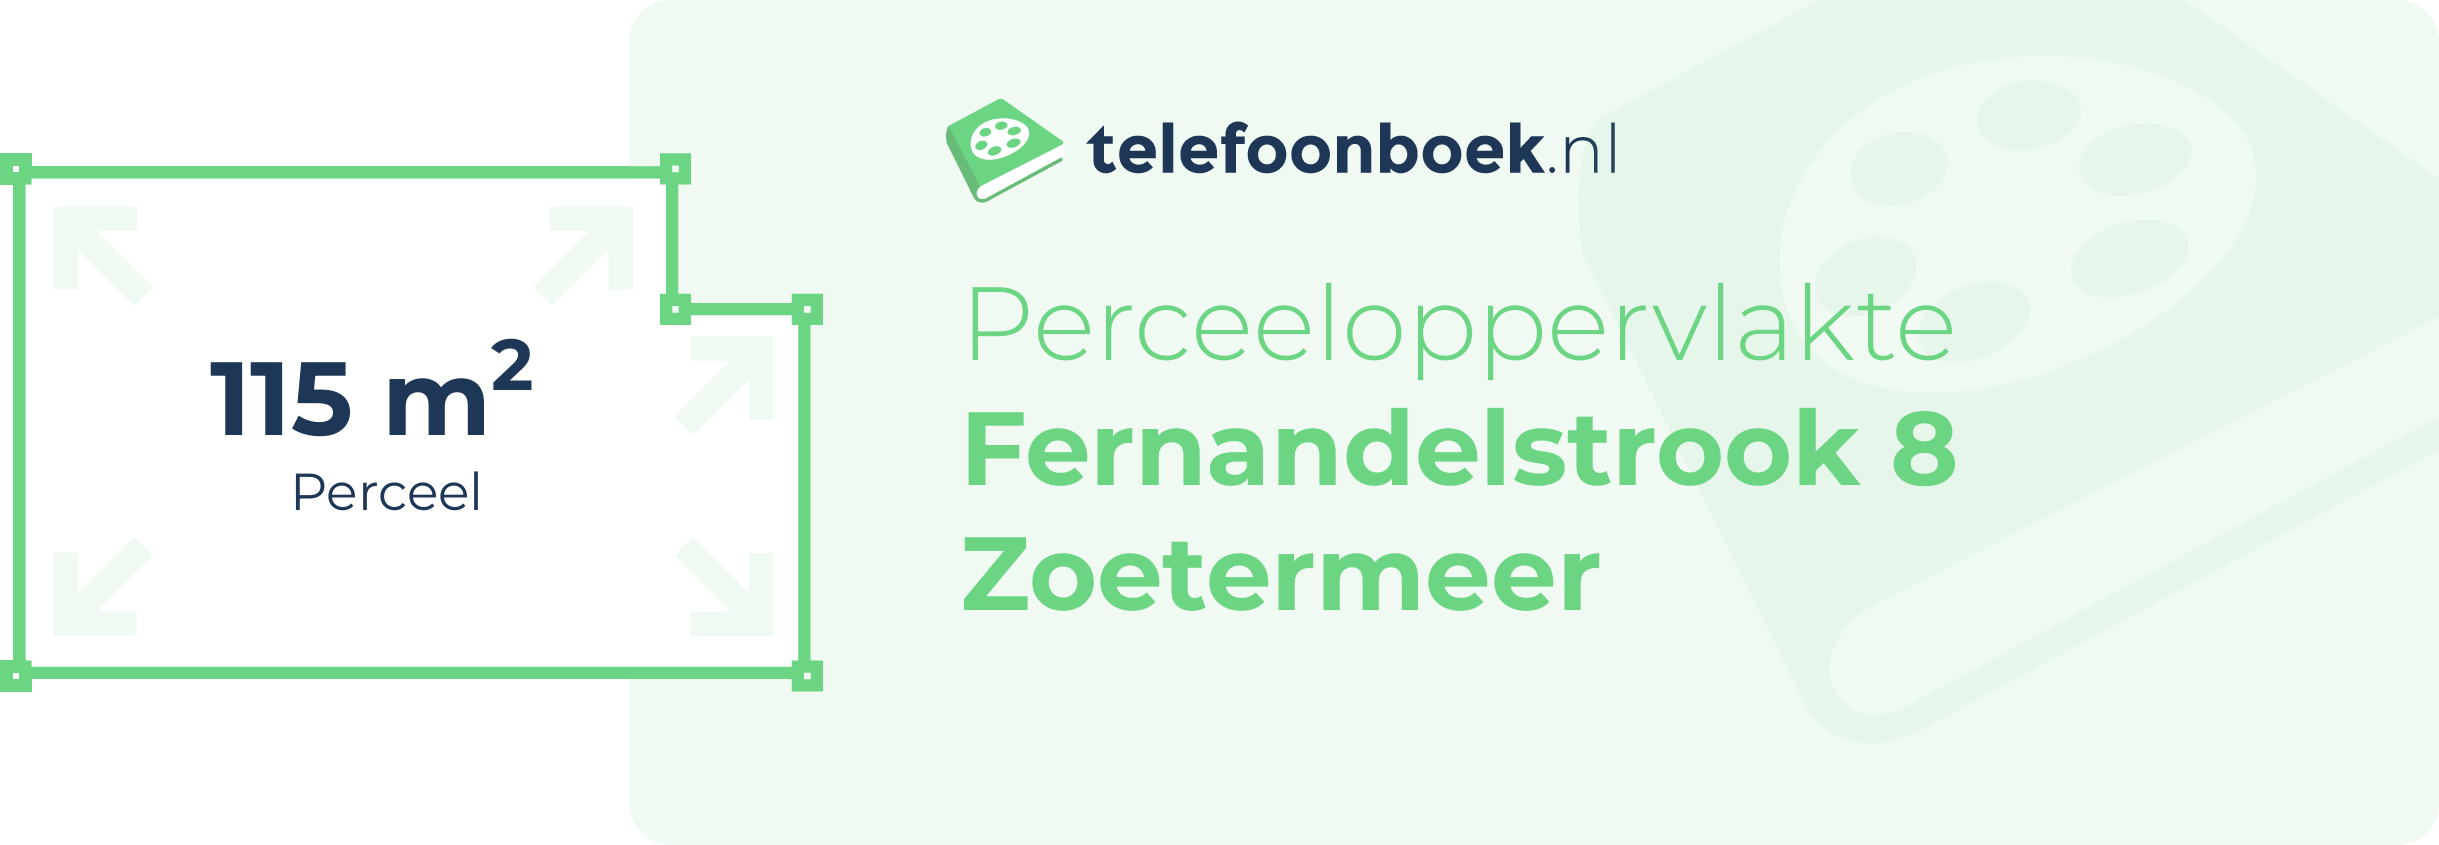 Perceeloppervlakte Fernandelstrook 8 Zoetermeer